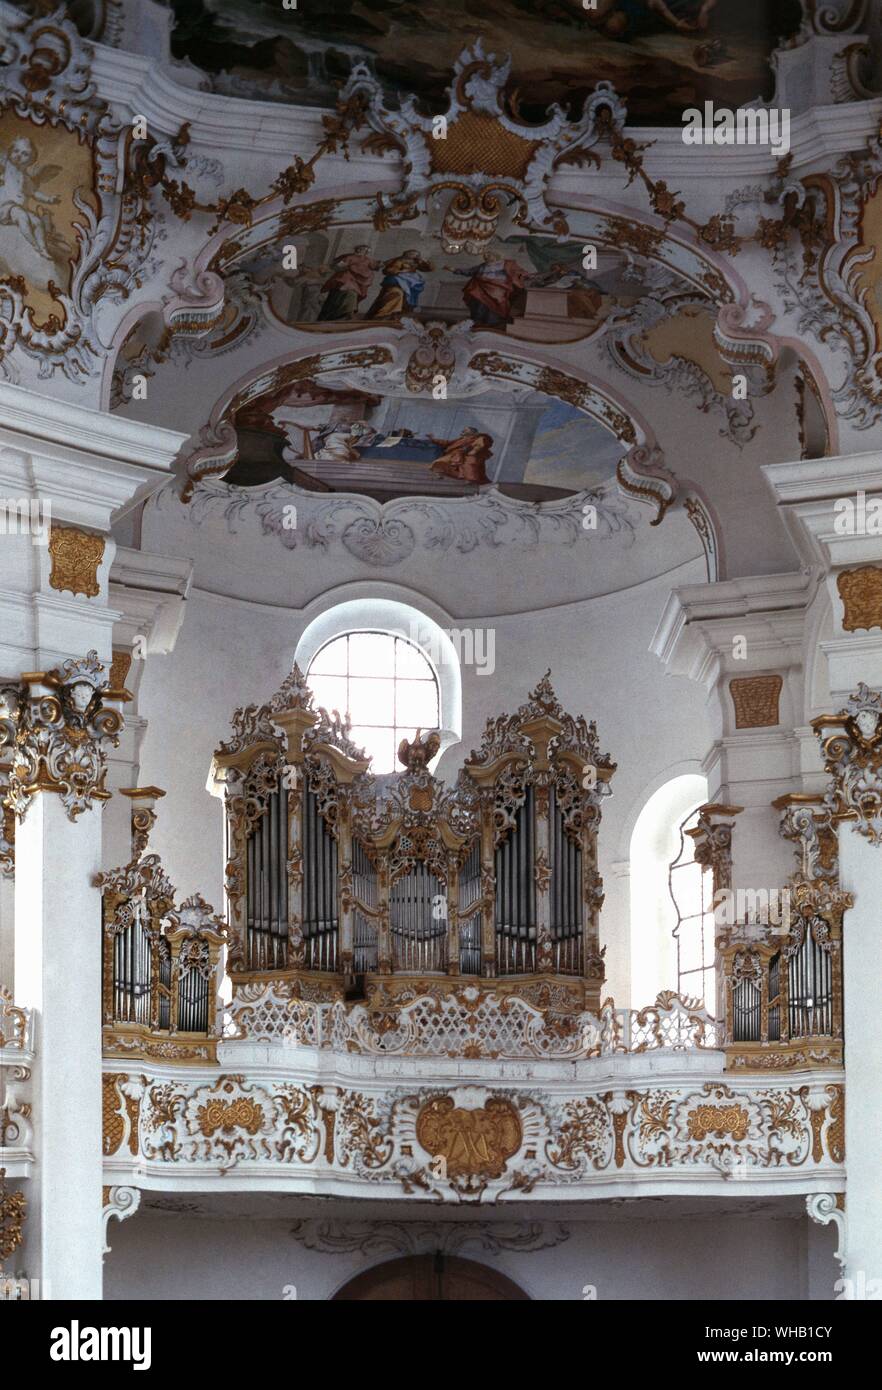 Organ case by Dominikus Zimmerman - organ by Steinmeyer - Garmisch Partenkirchen, Bavaria (Westkirche). Stock Photo